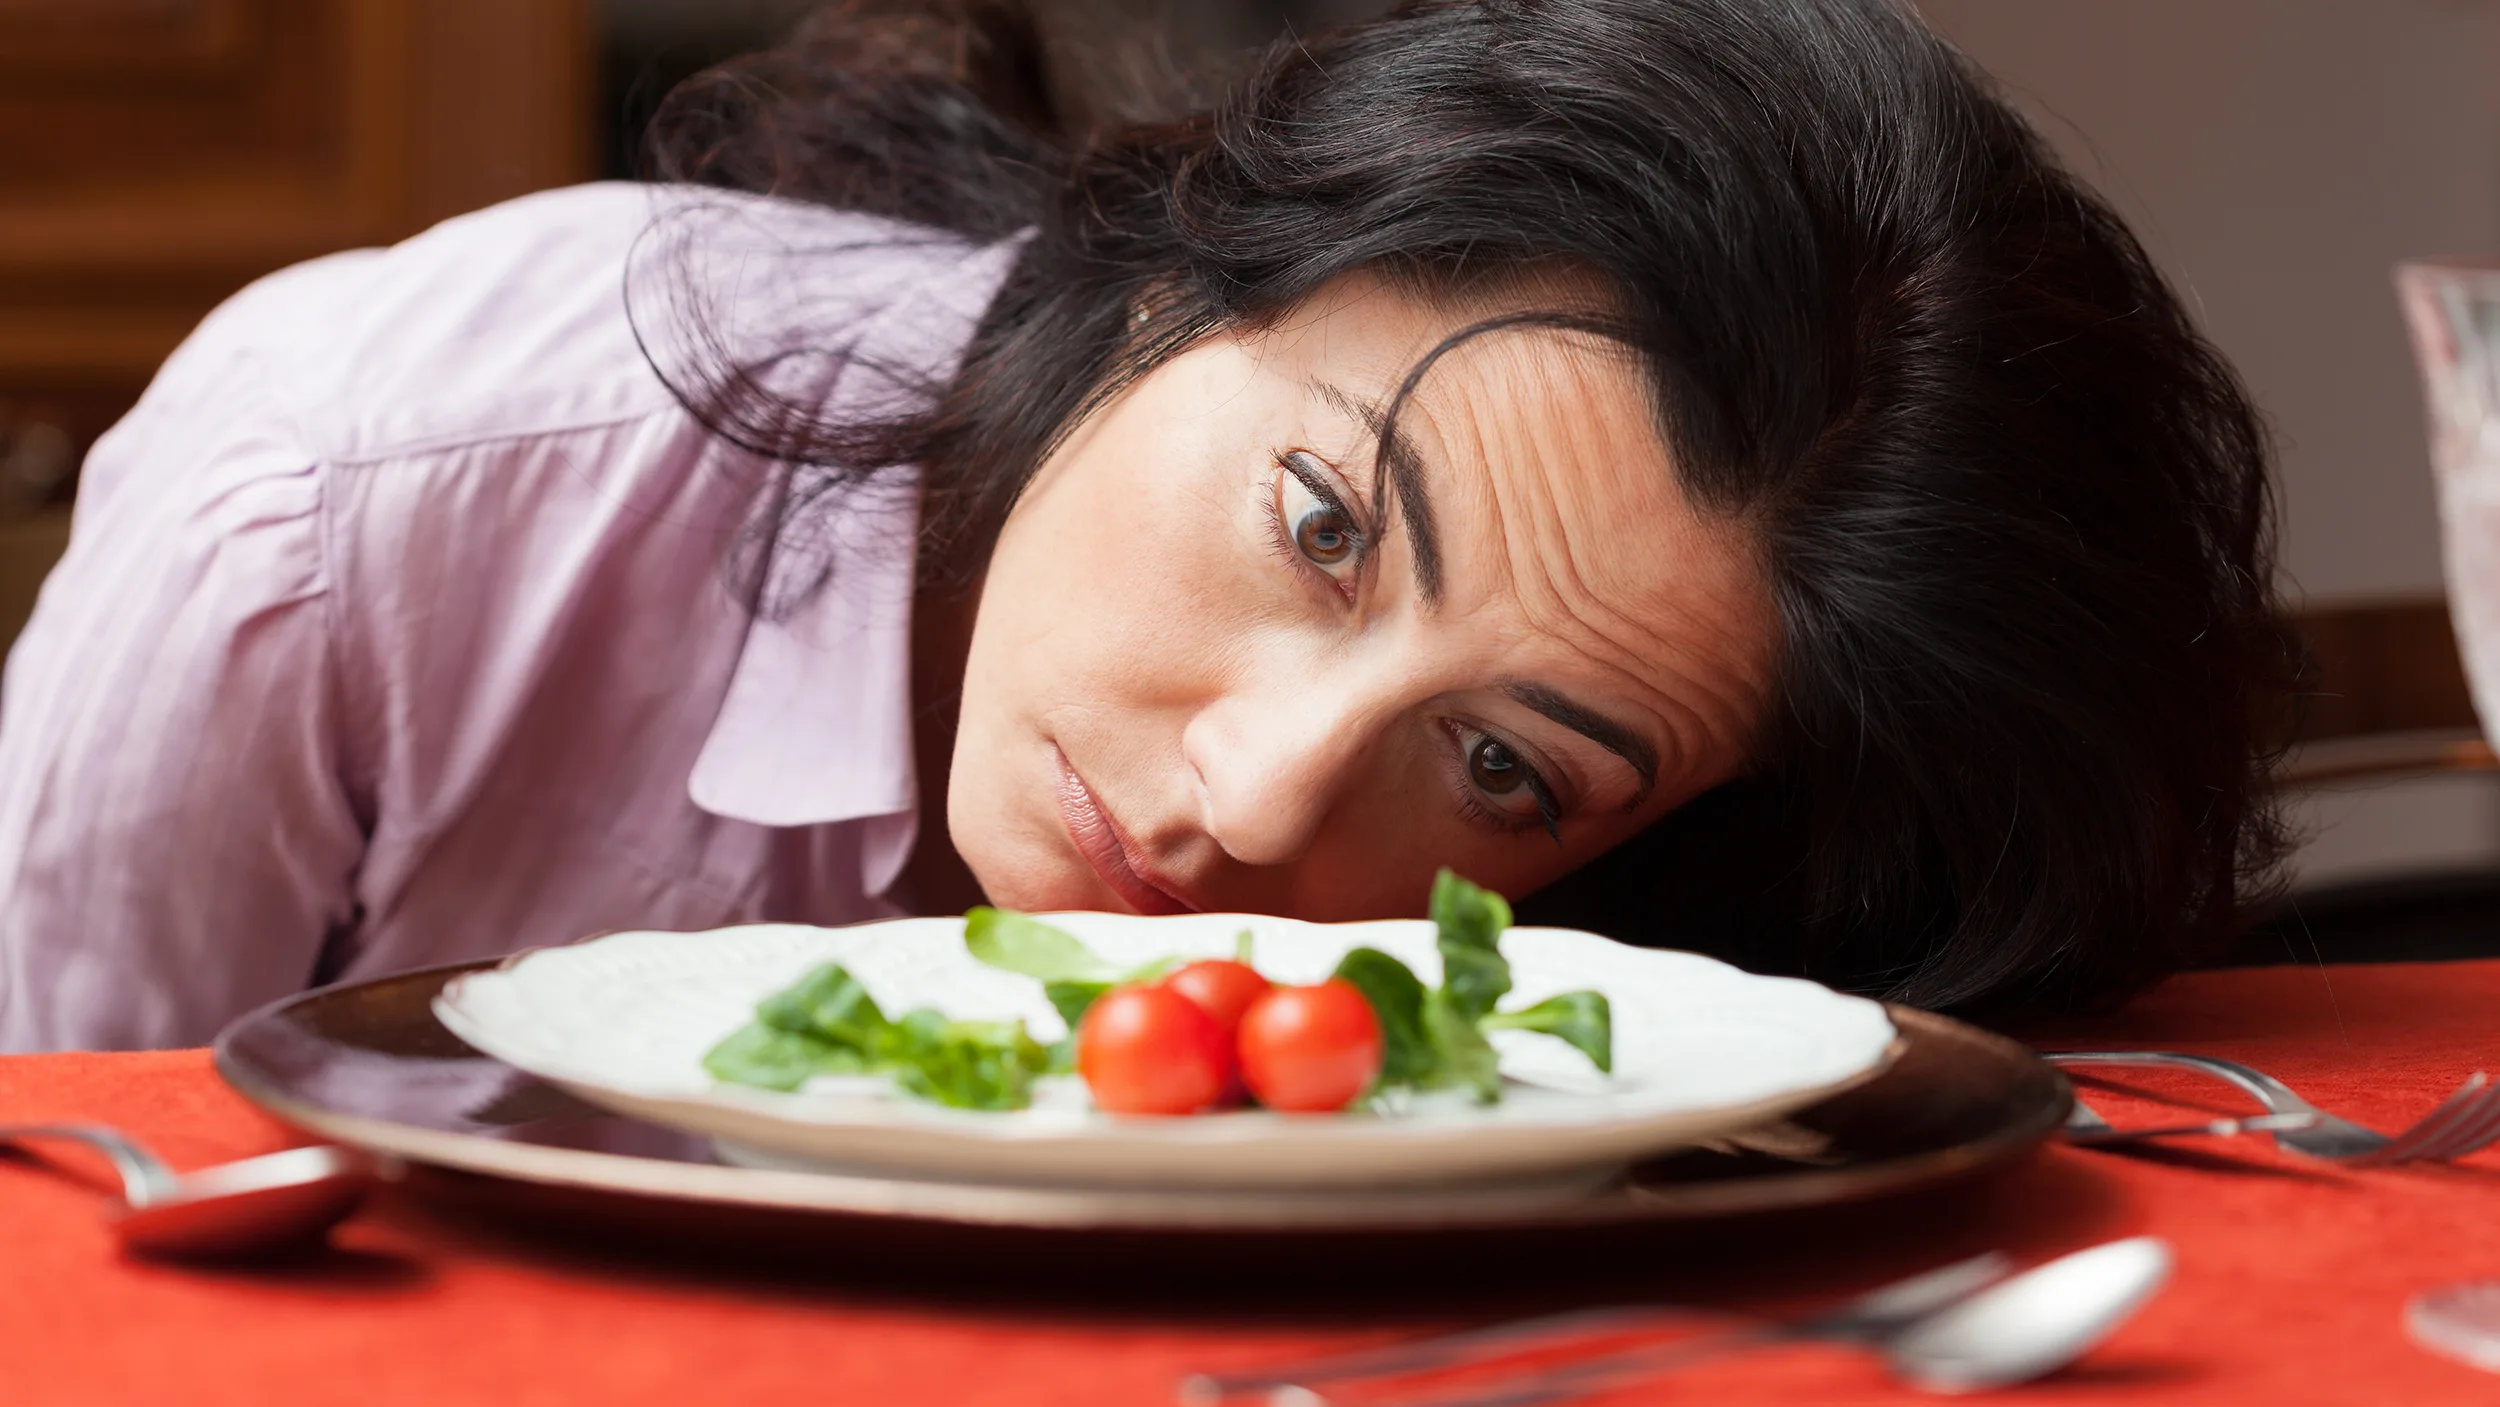 woman-salad-sad-diet-stock-today-161110-tease_ac118f3d7b7d235b6f0587fb61c23039